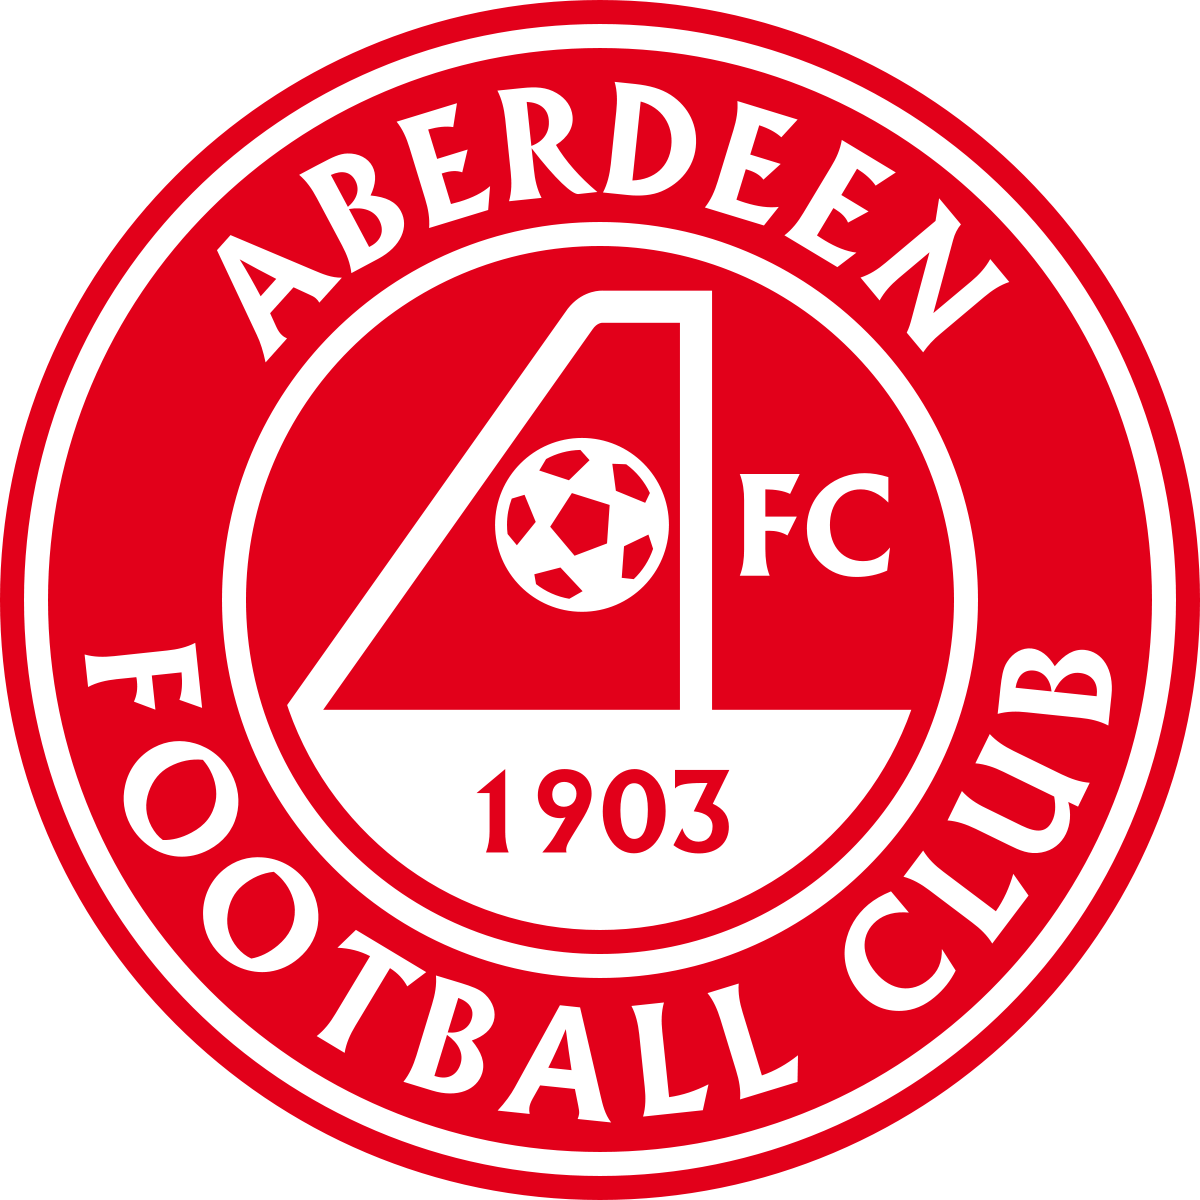 Aberdeen Football Club, 1903 